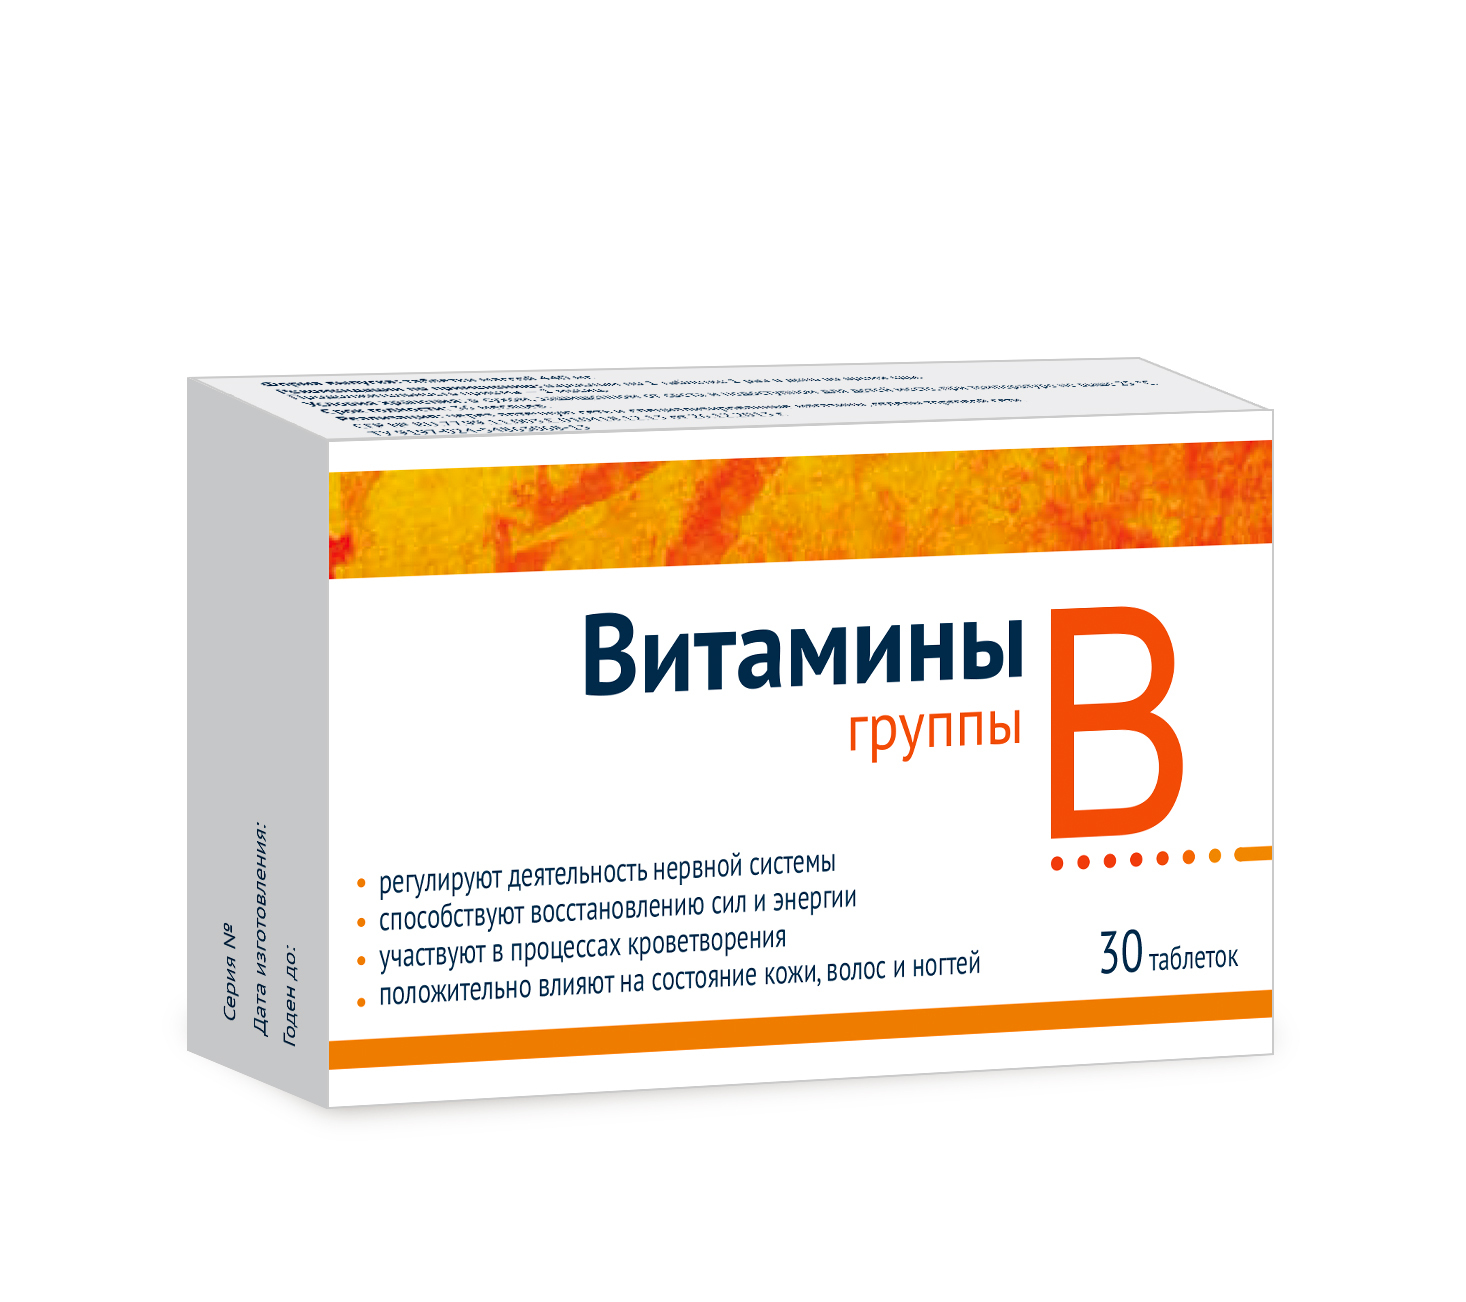 Как принимать таблетки б6. Витамины группы в табл x30. Комплекс витамины в 1 6 12 в таблетках. Комплекс витаминов в1 в6 в12 в таблетках название препаратов. Витамины б12 б6 в таблетках названия препаратов.